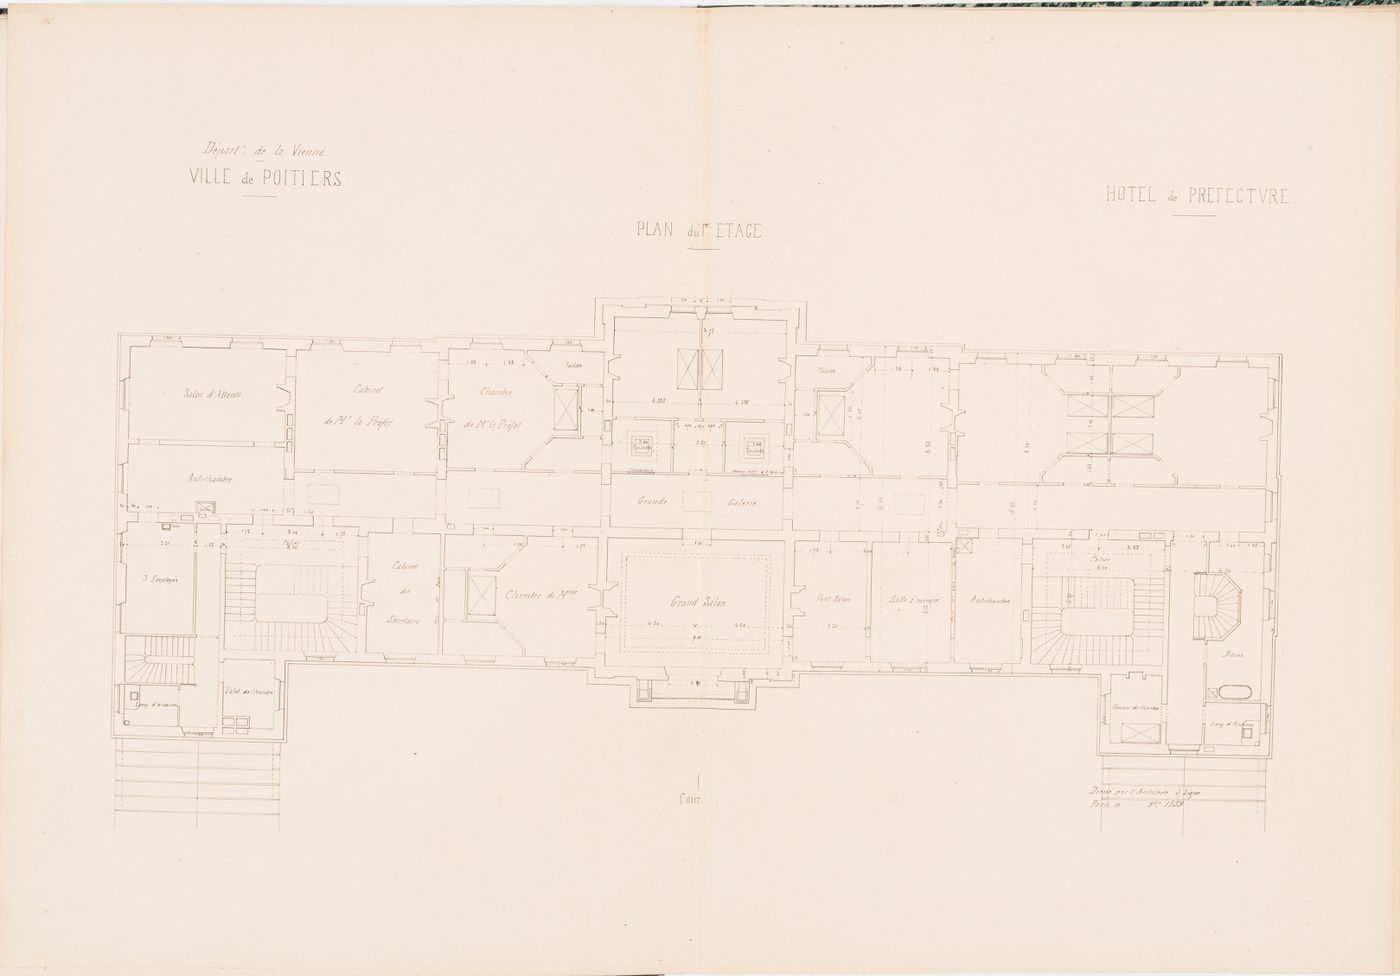 Project for a Hôtel de préfecture, Poitiers: First floor plan for the Hôtel du Préfet